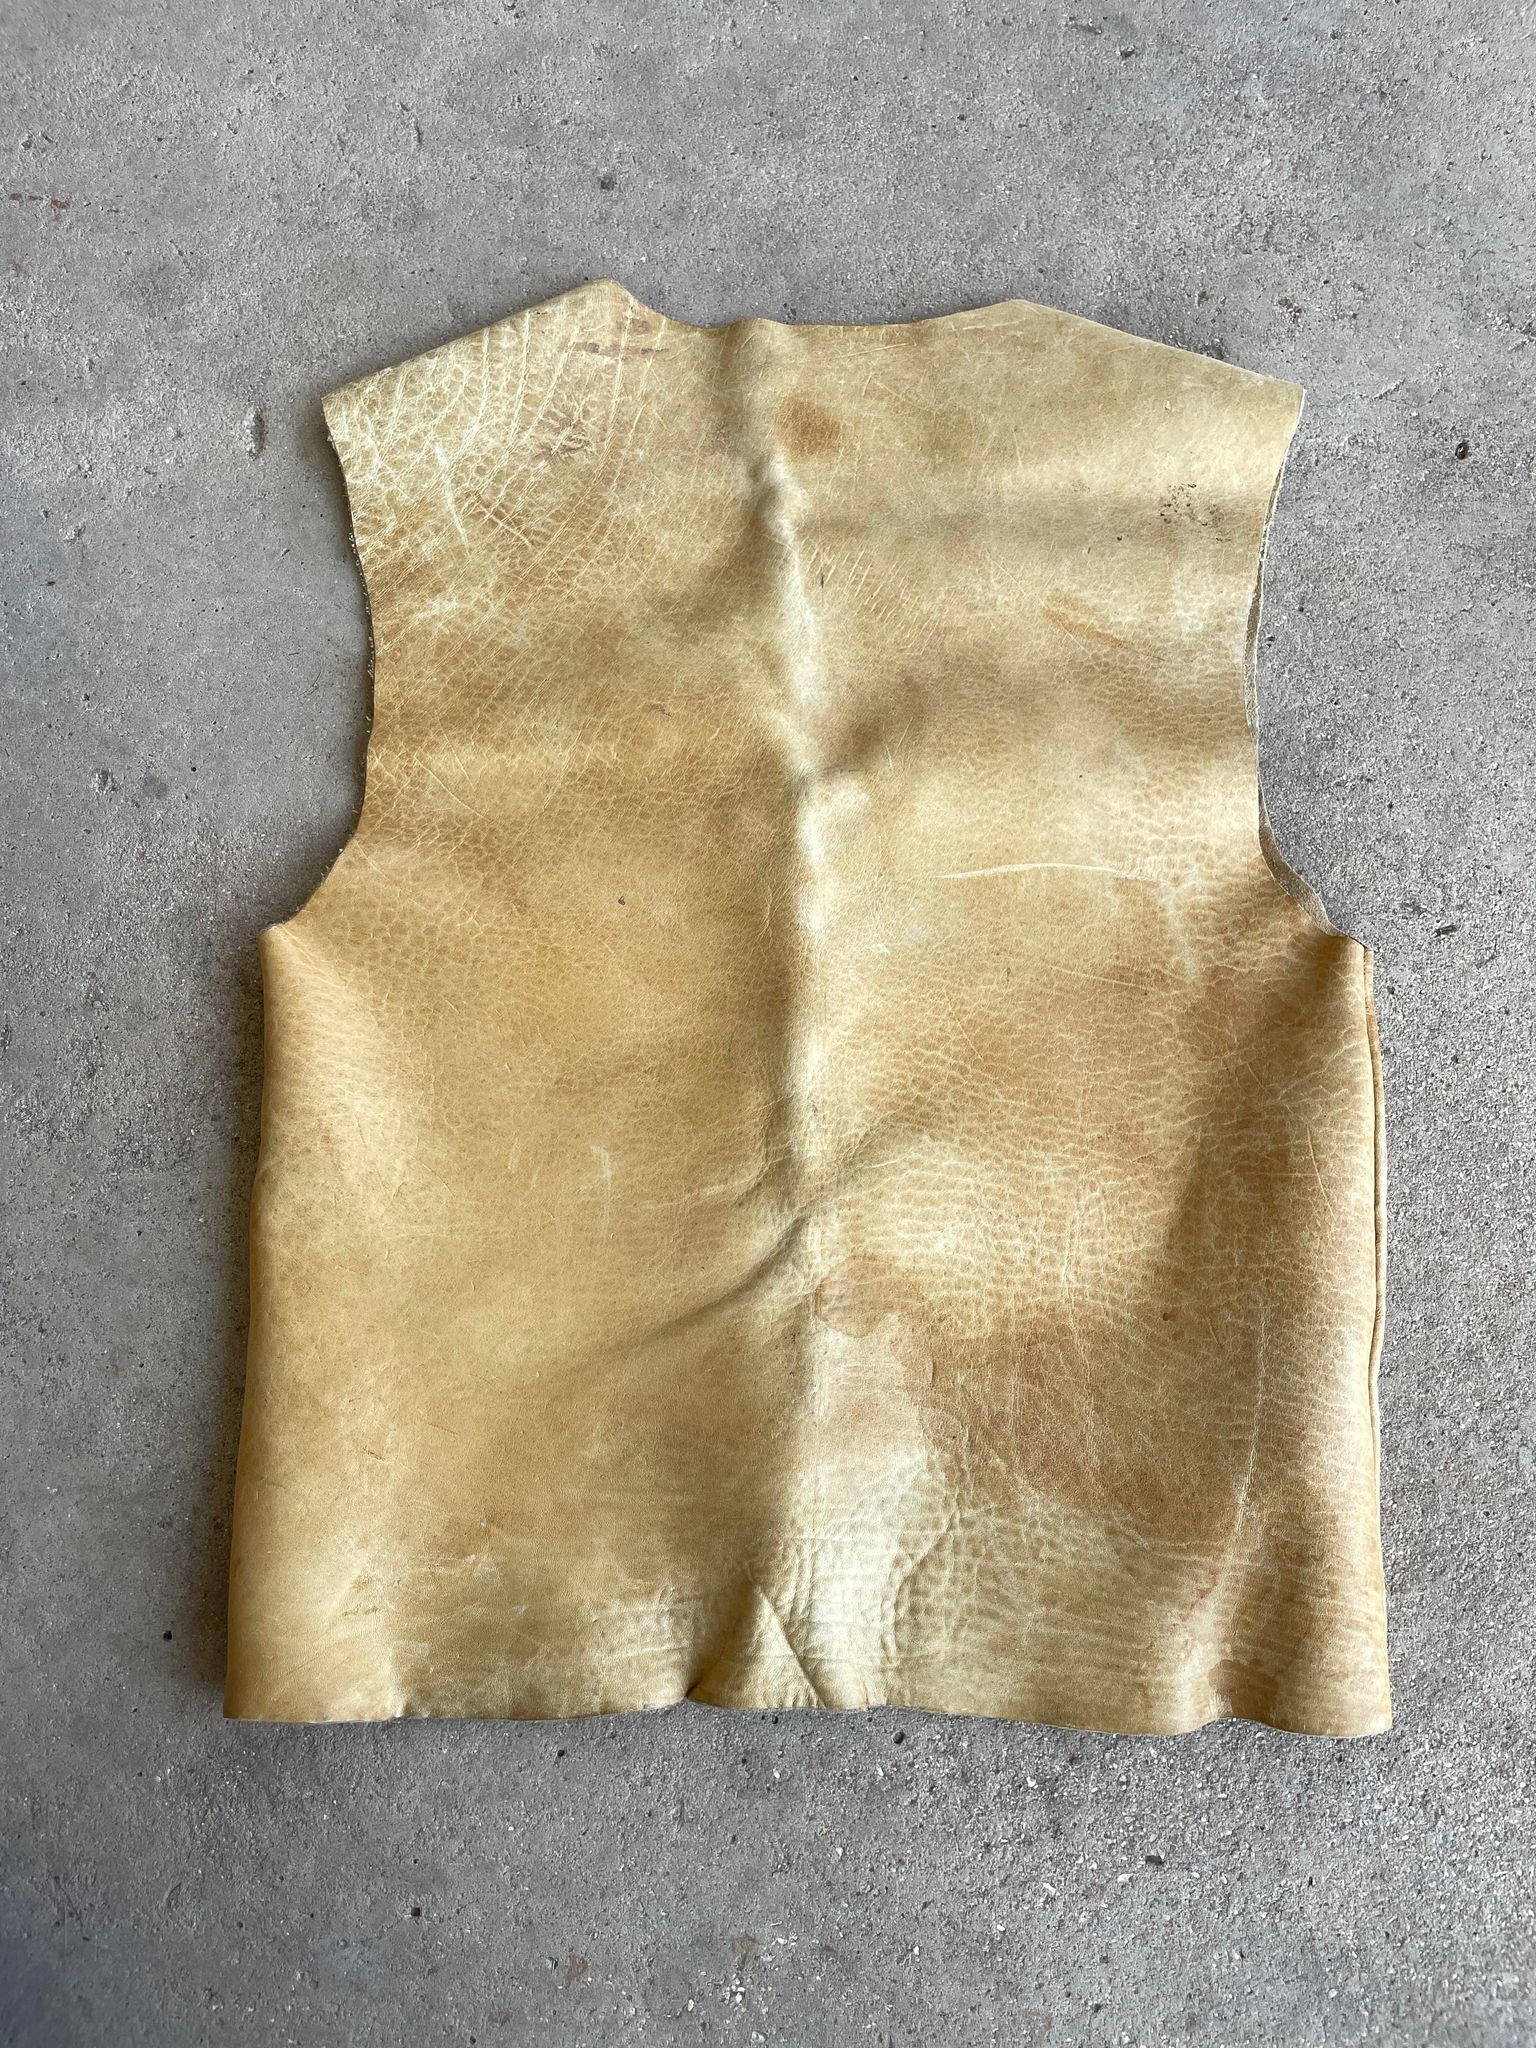 Vintage Primitive Handmade Vest